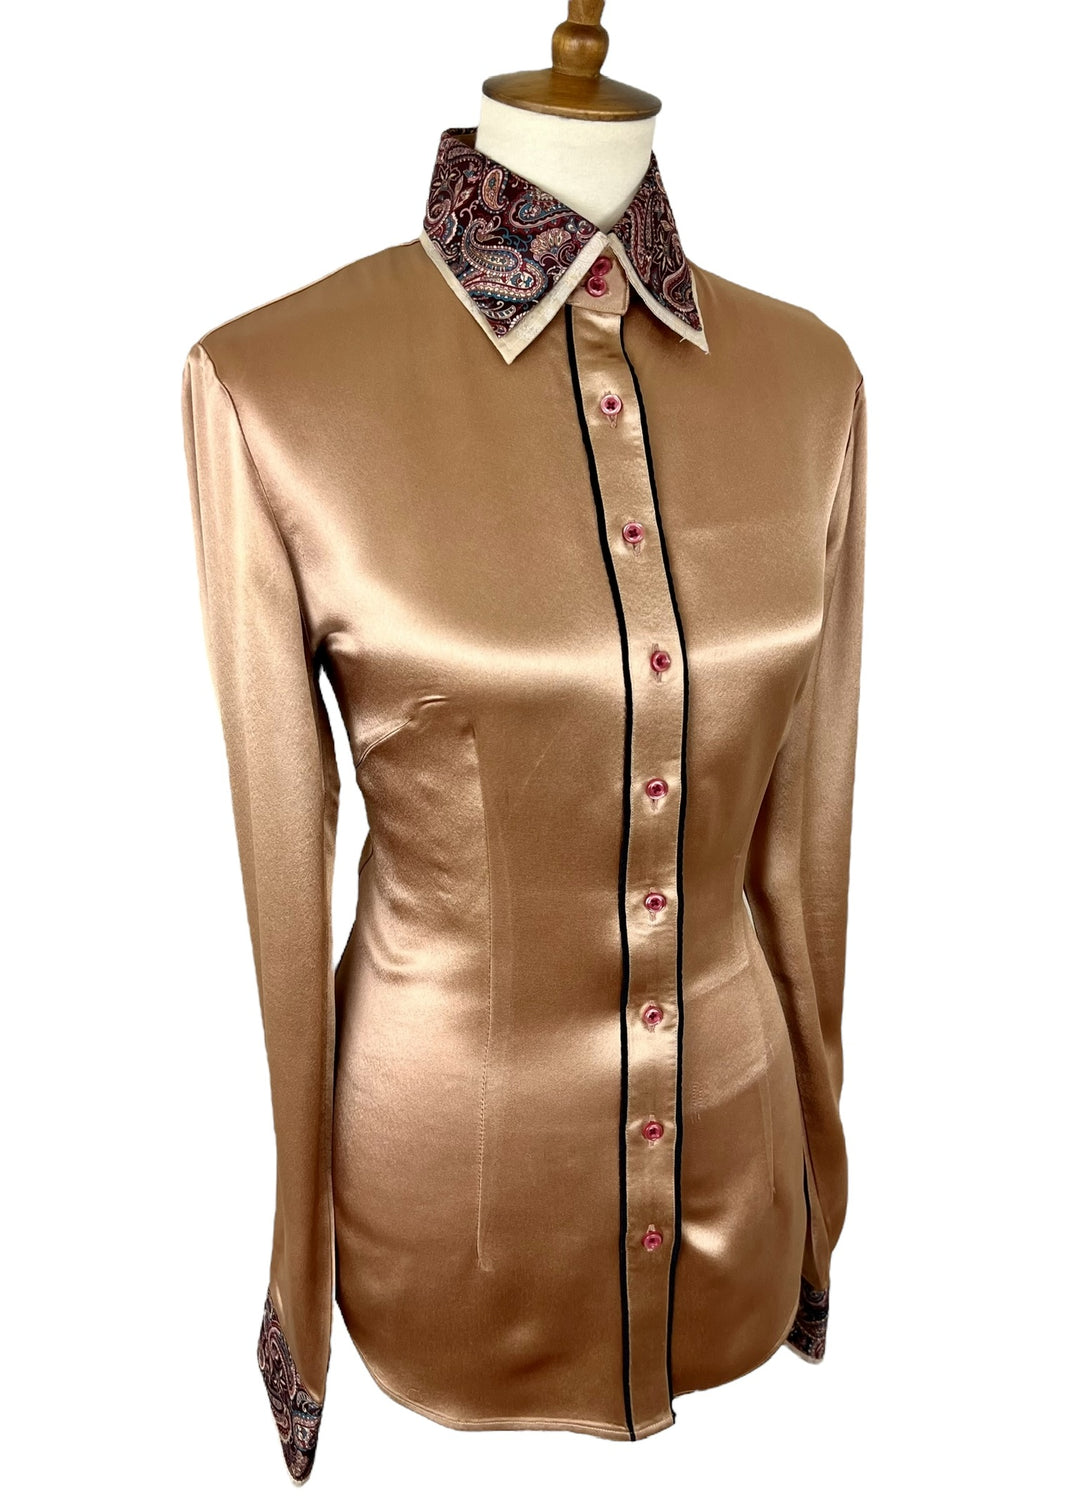 Bronze Satin Western Shirt (Size 38/40) - Ref. 110